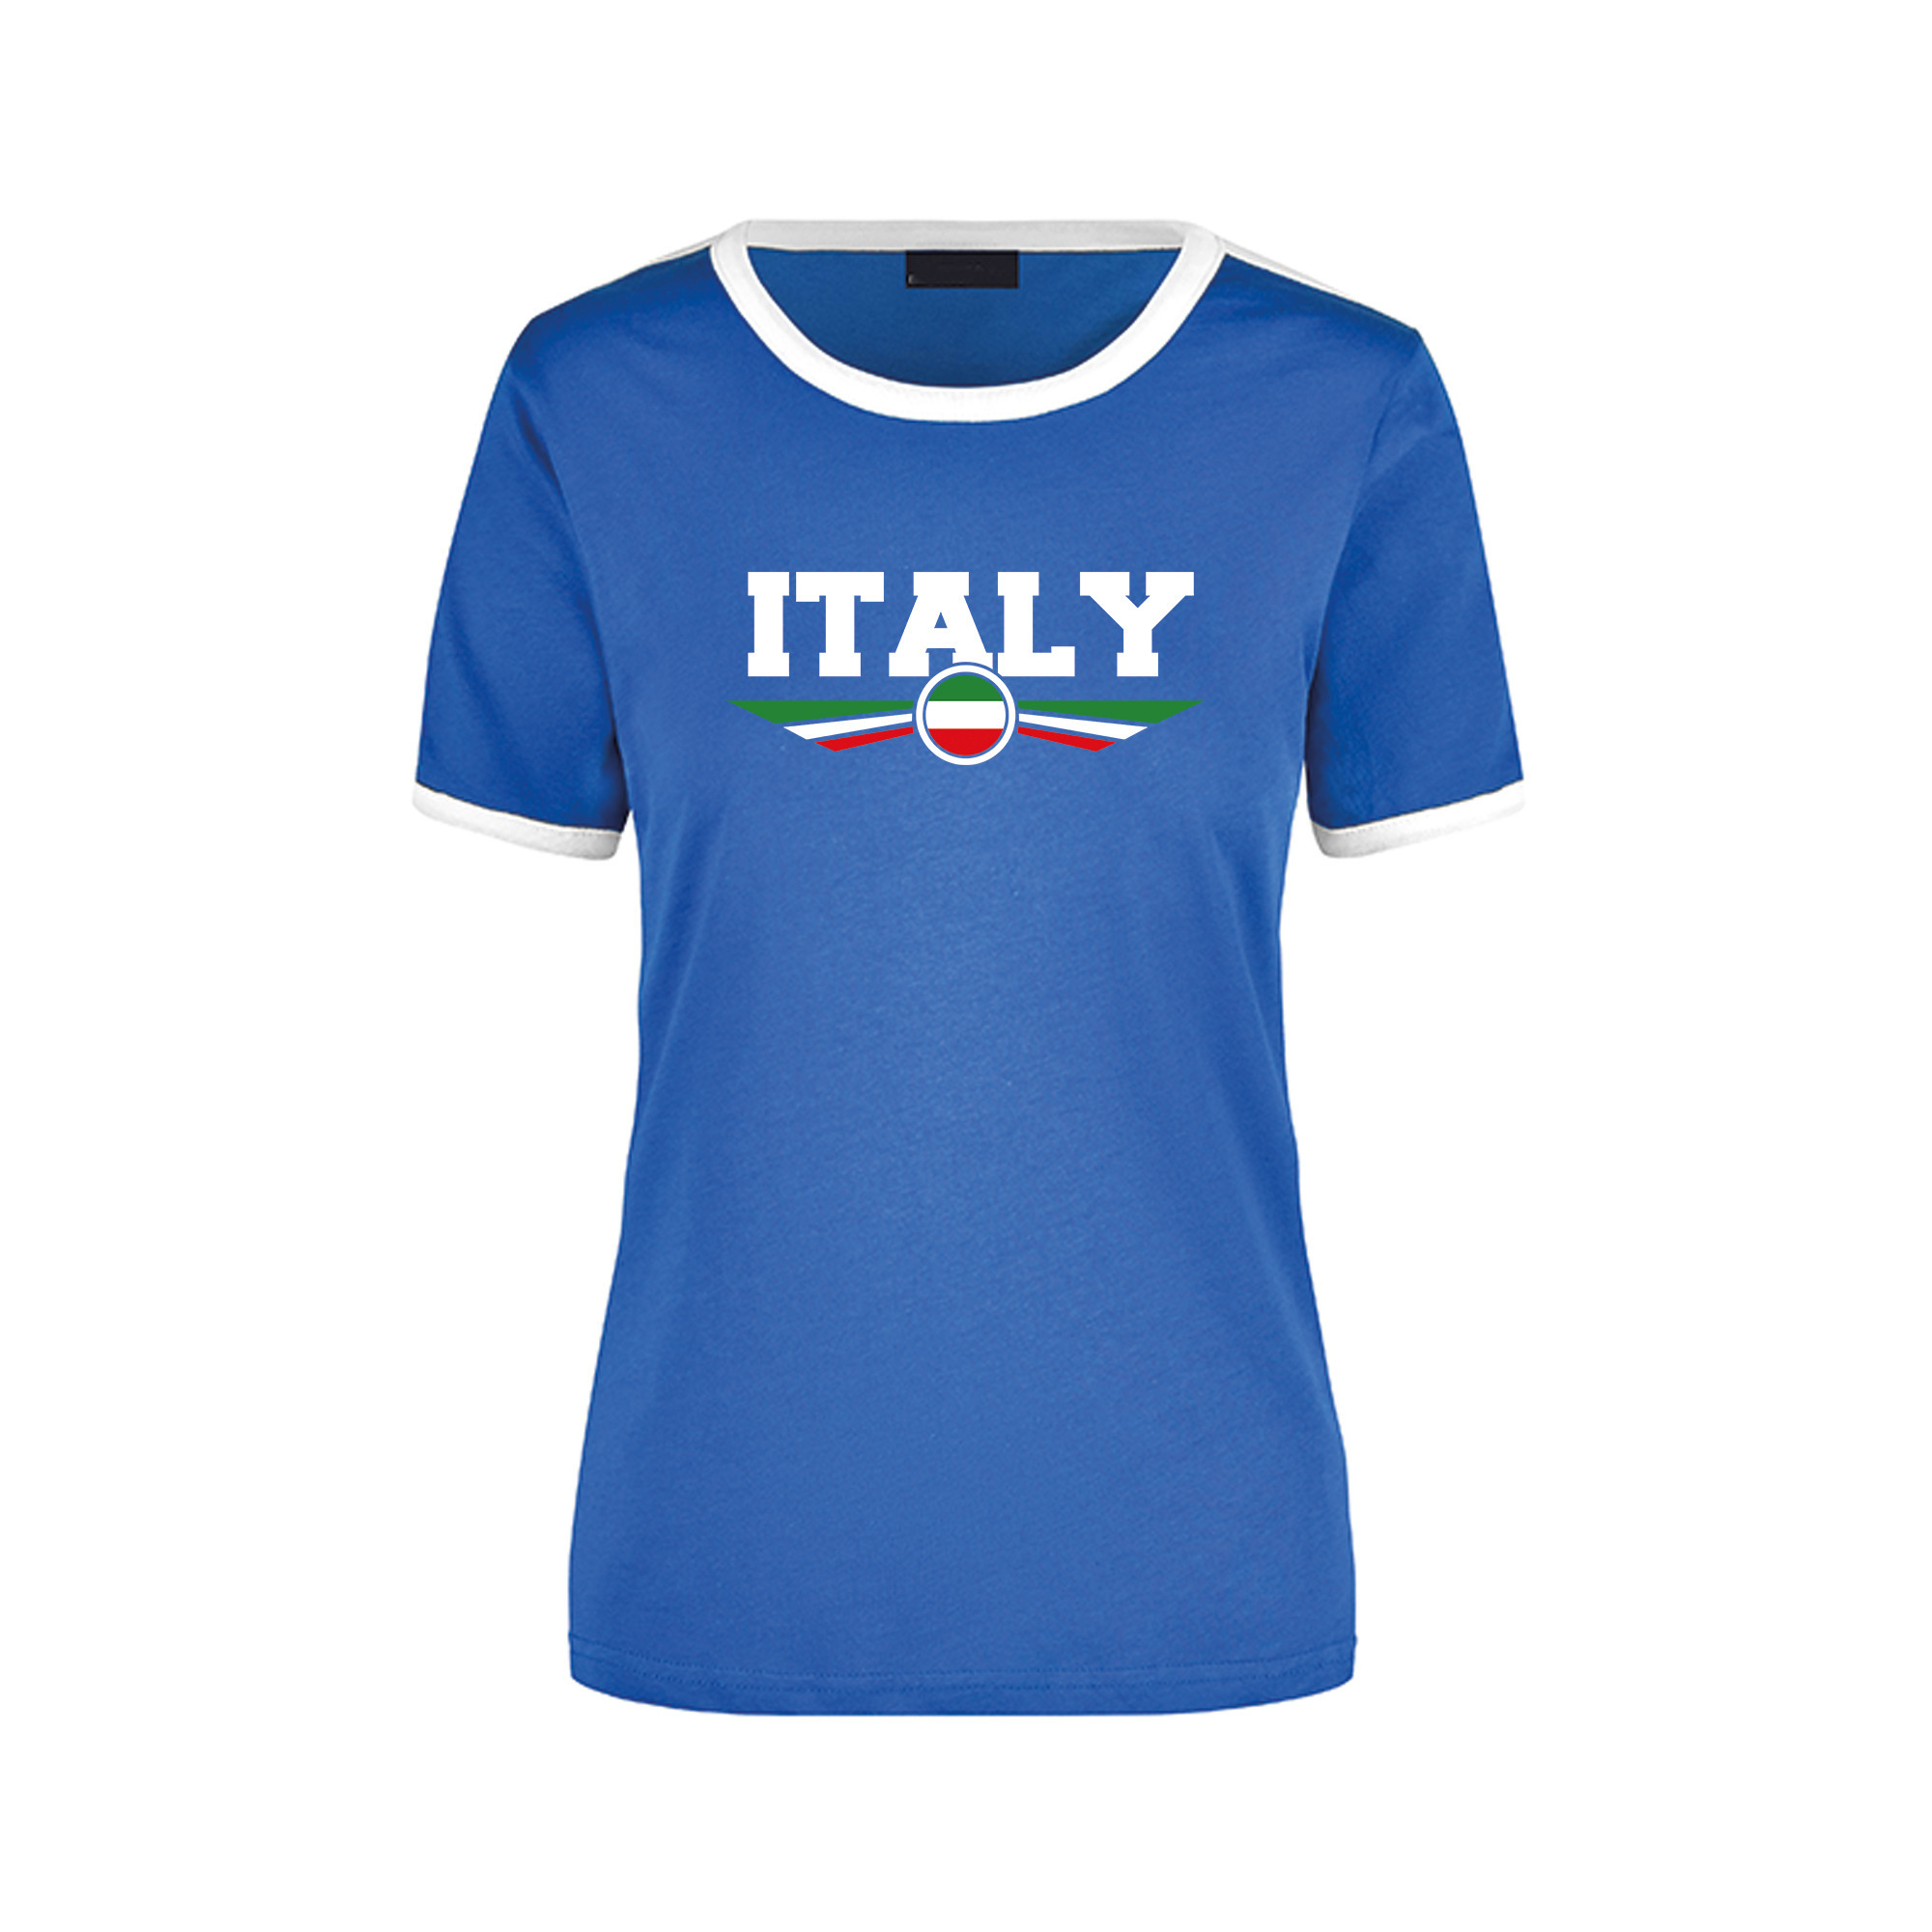 Italy ringer landen t-shirt blauw met witte randjes voor dames Italie supporter kleding